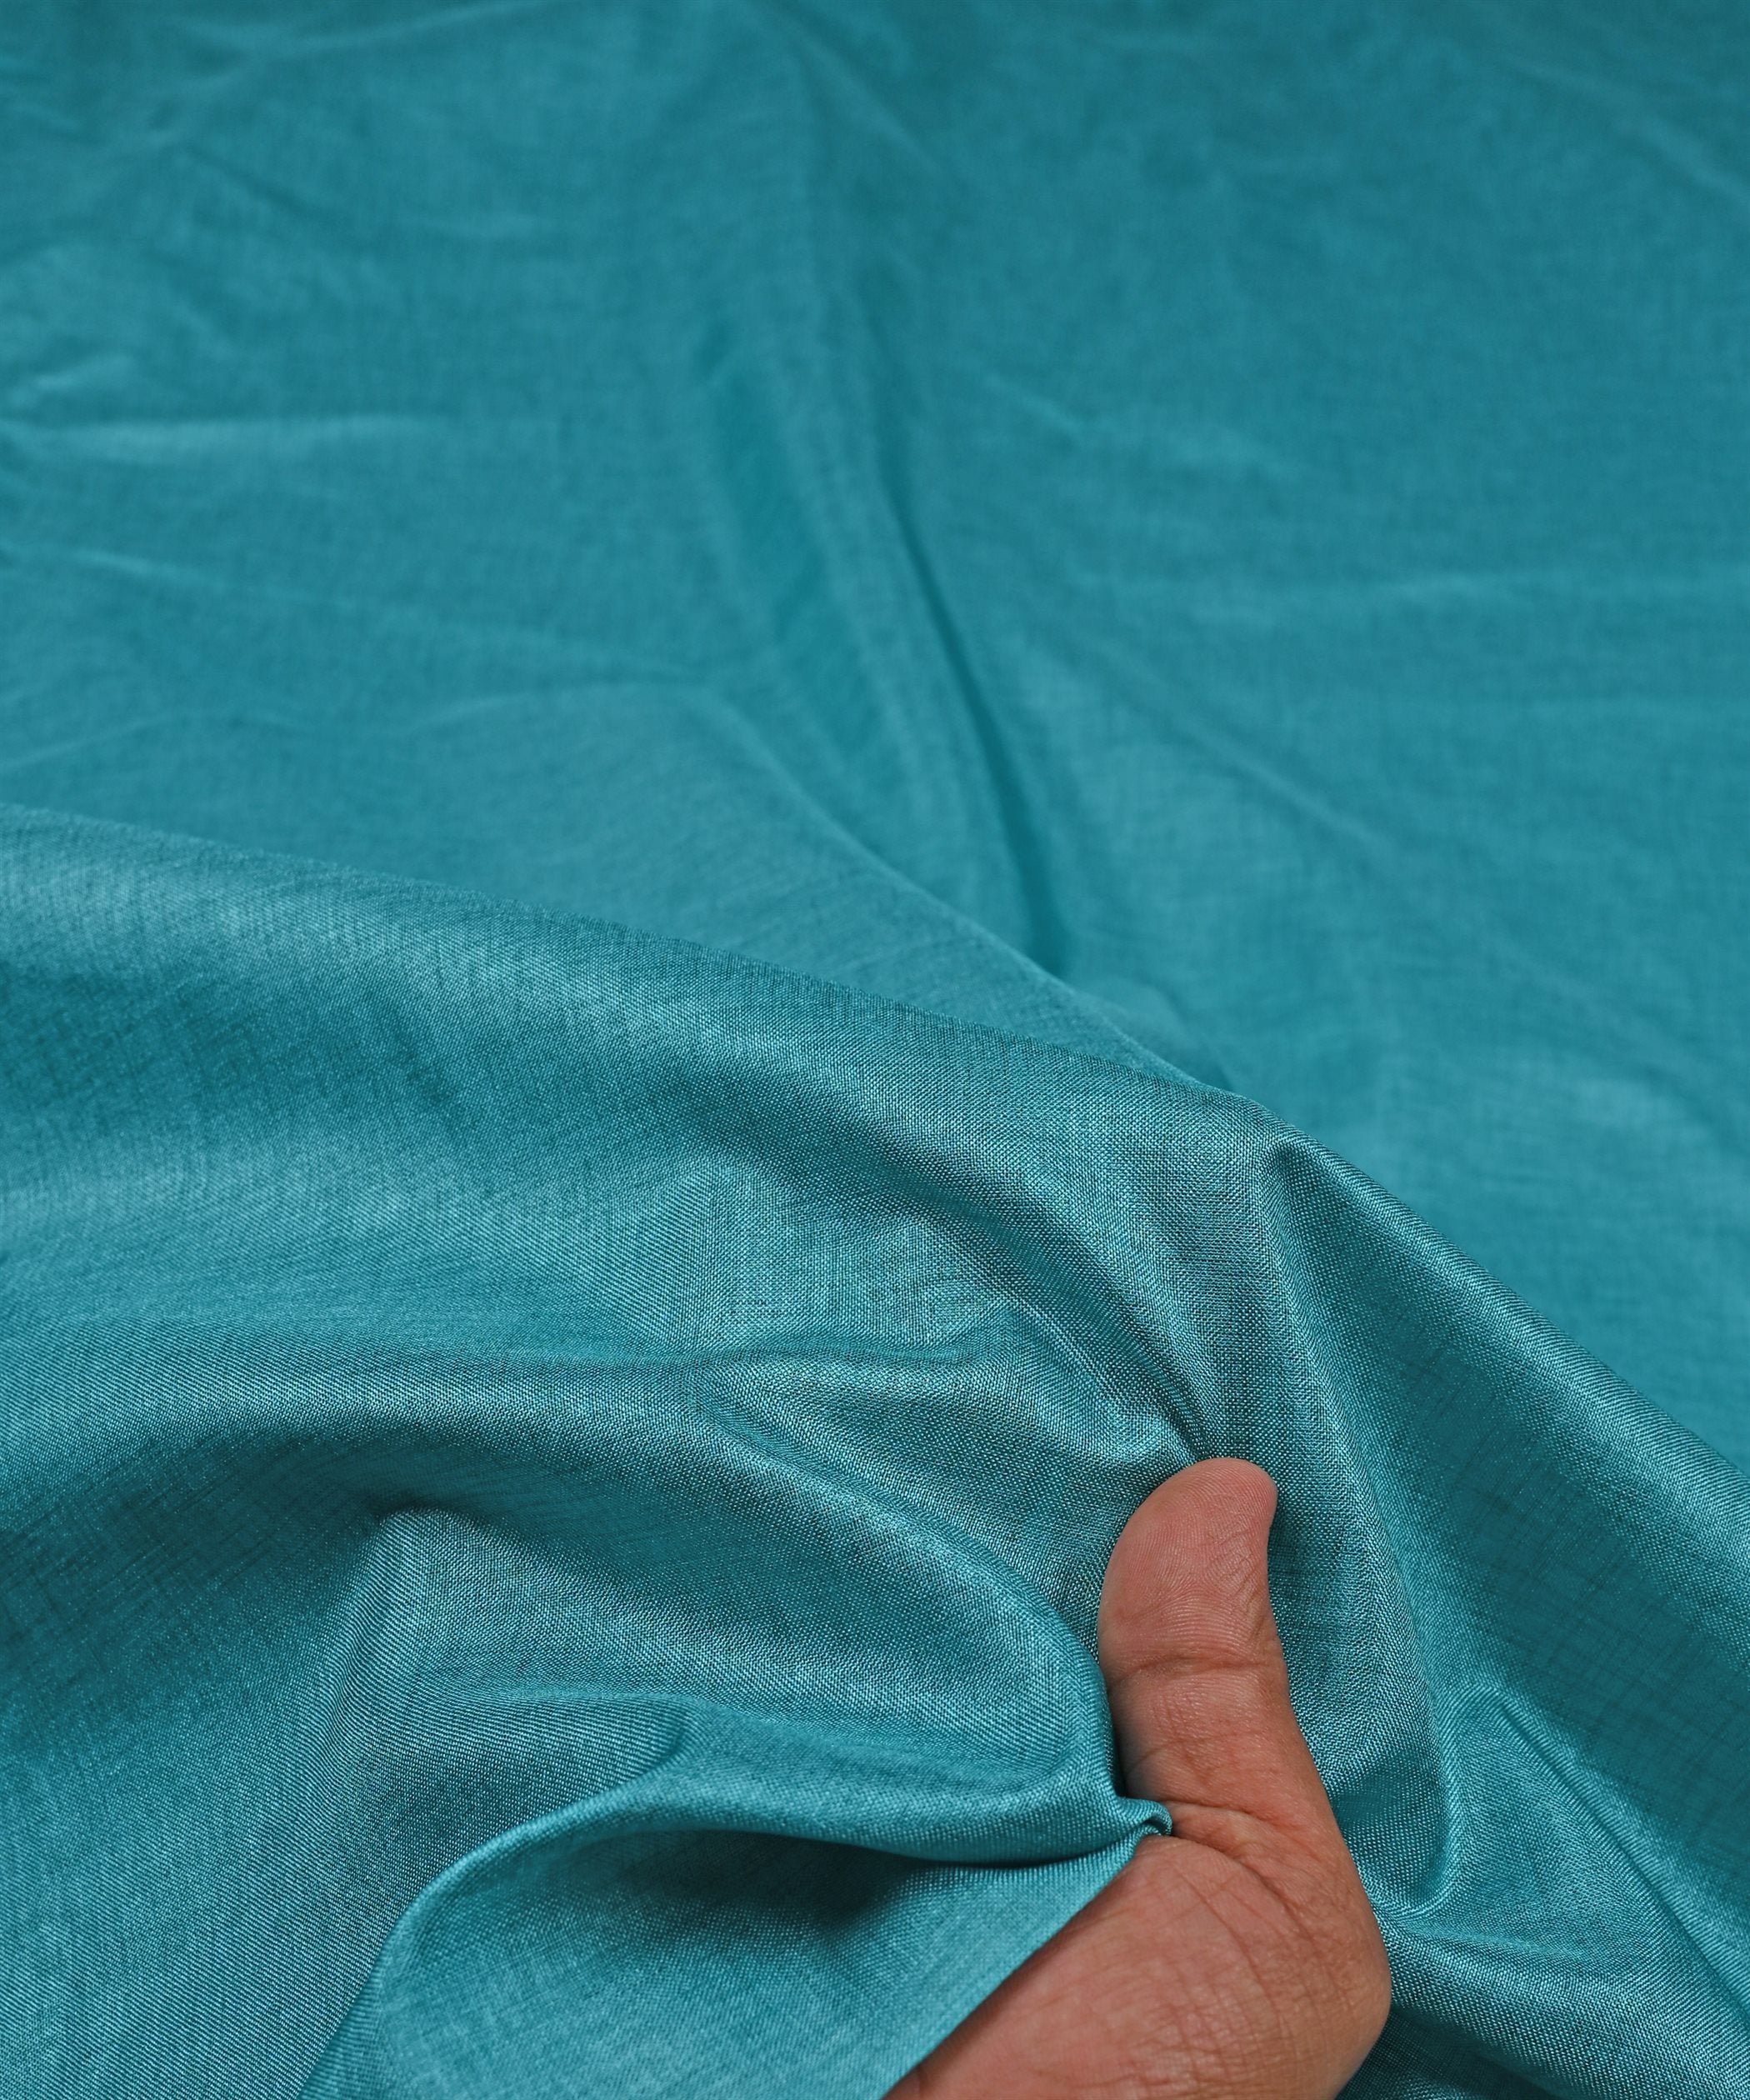 Aquamarine Plain Dyed Manipuri Fabric